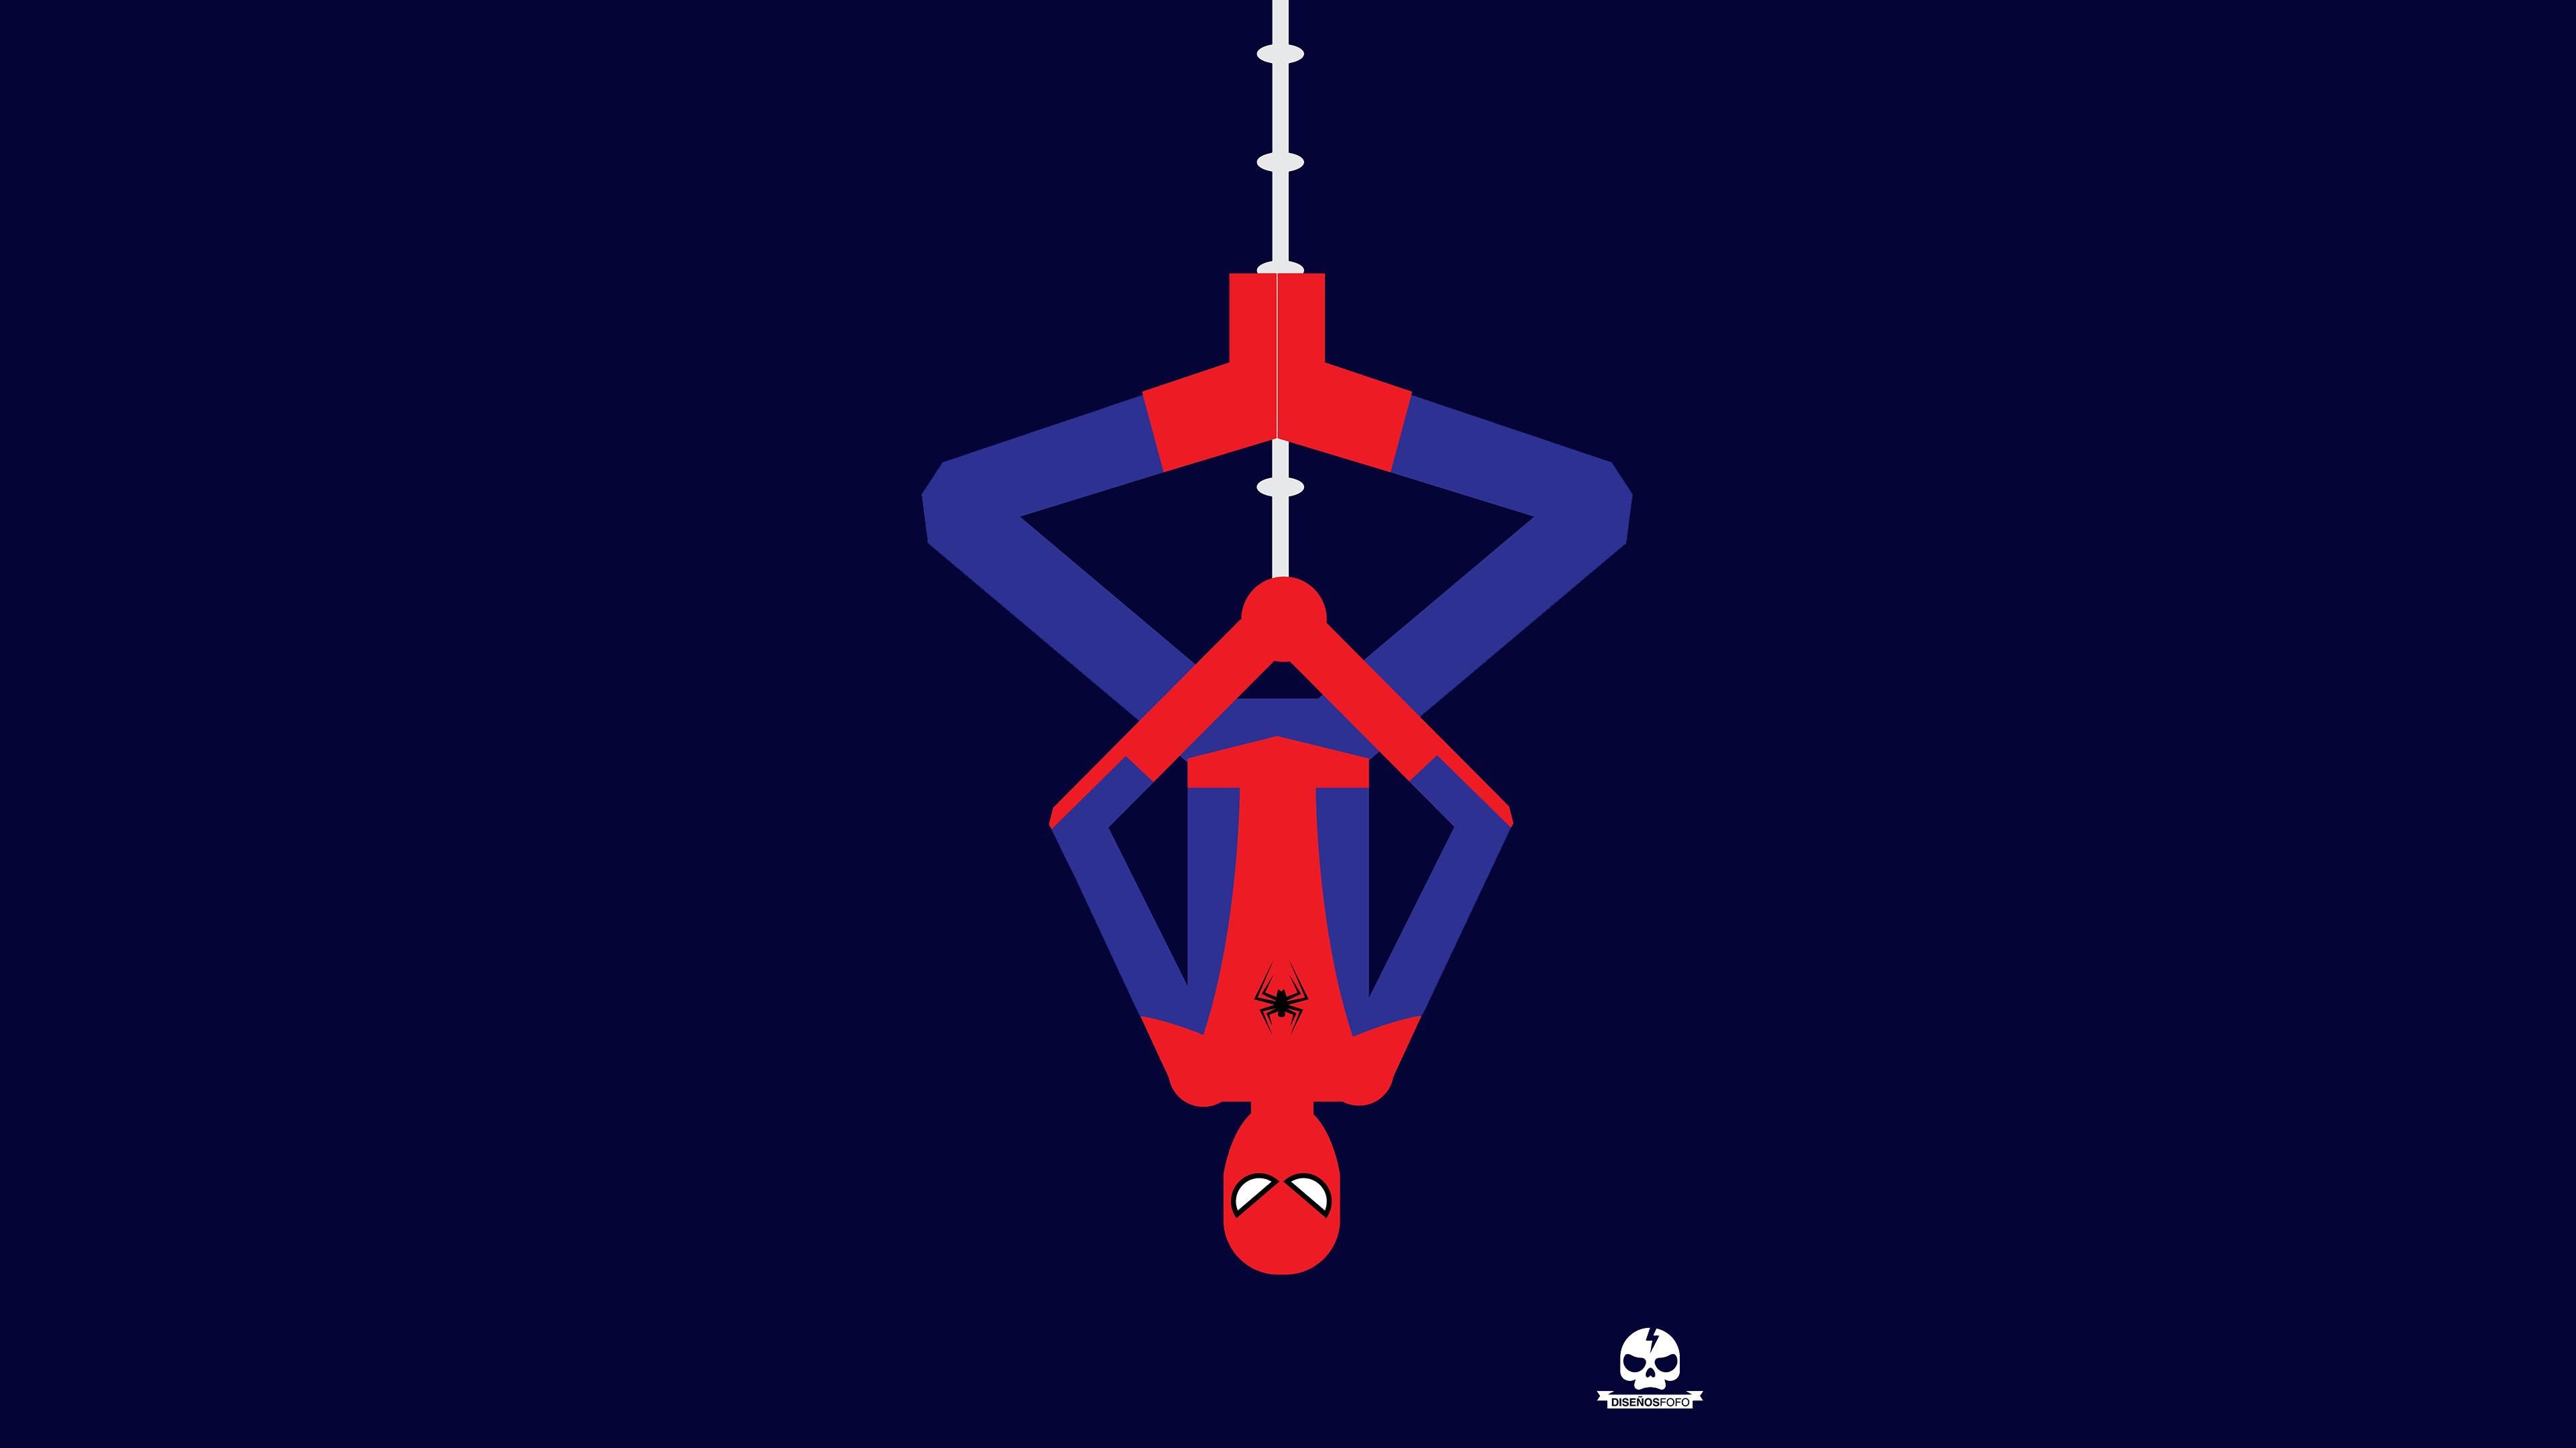 Spiderman Upside Down Minimalism 4k Wallpaper HD Superheroes